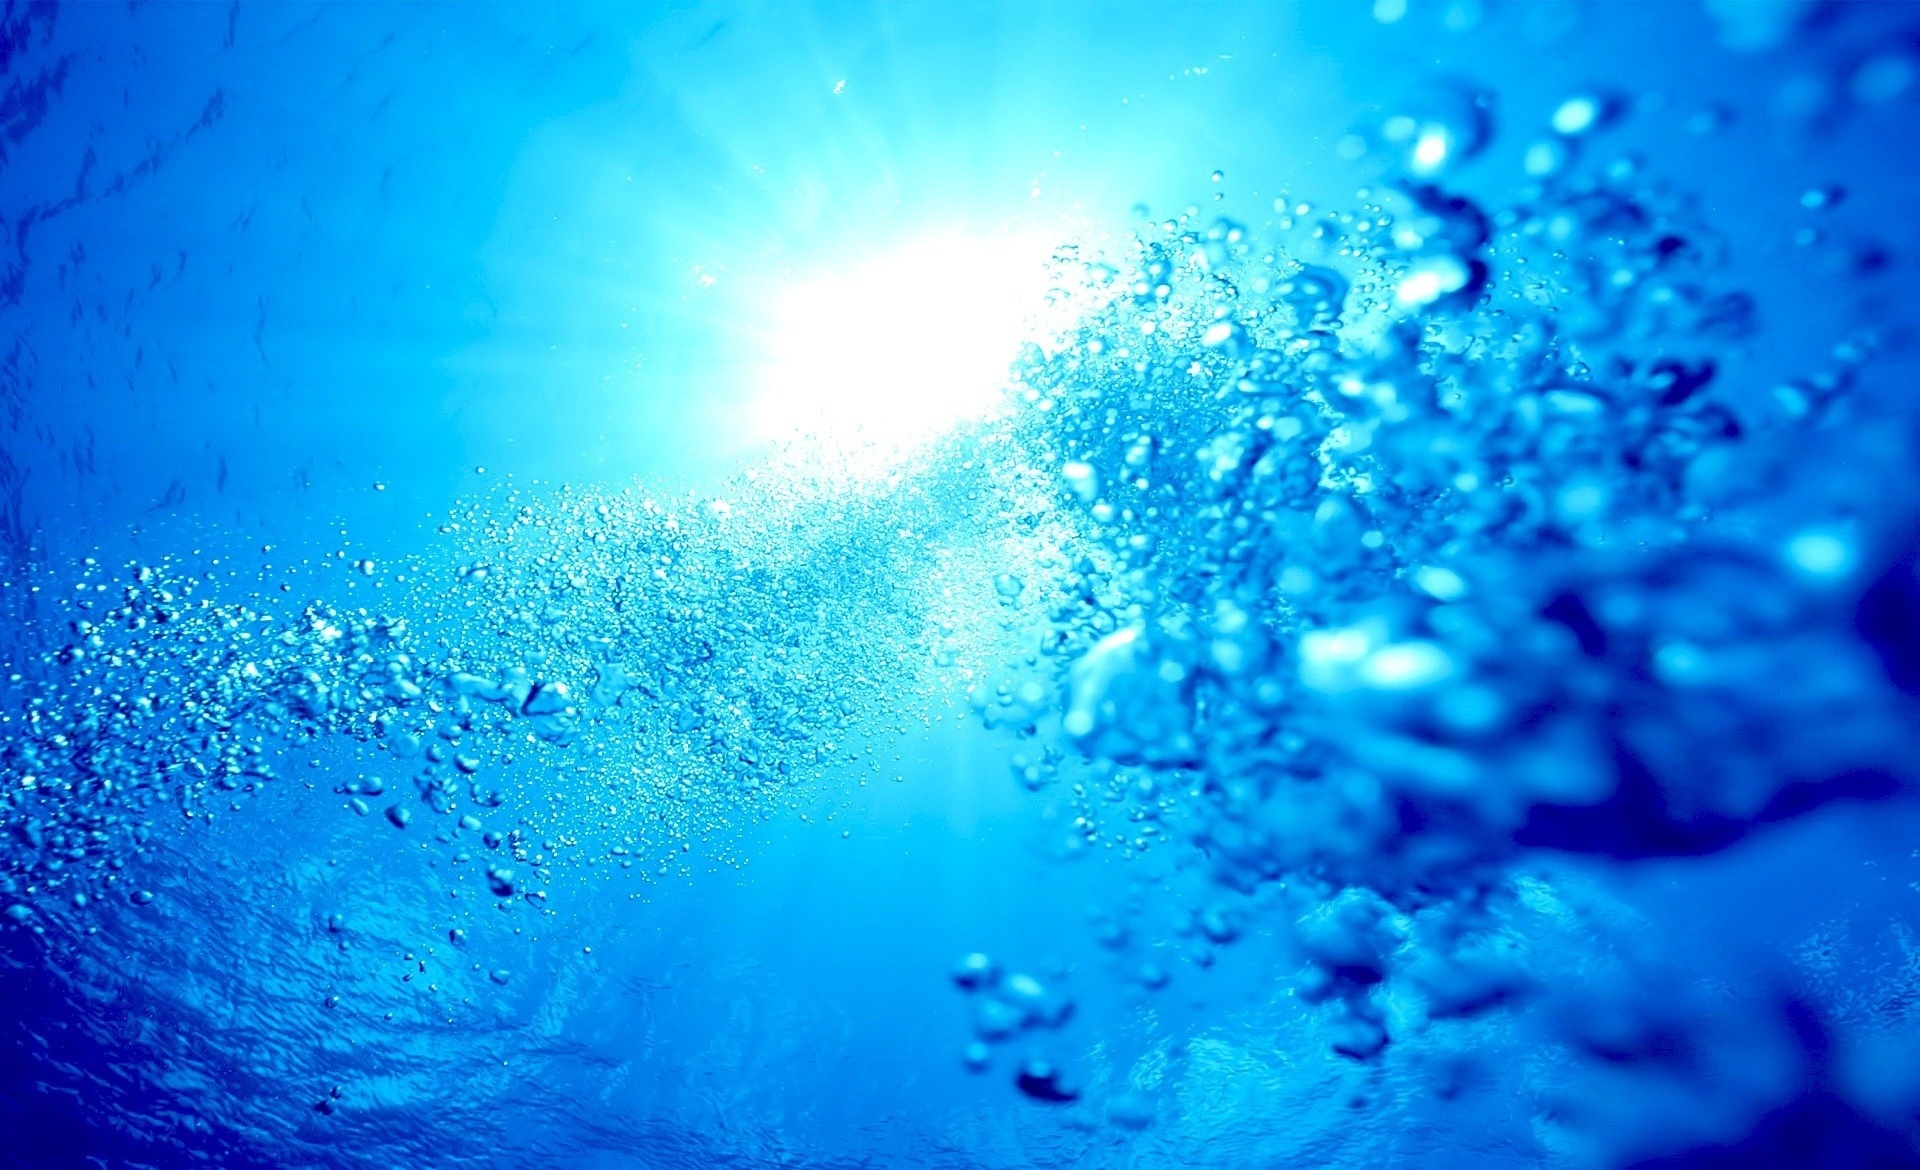 Wallpaper Ocean Sea Underwater Bubbles Desktop Nature